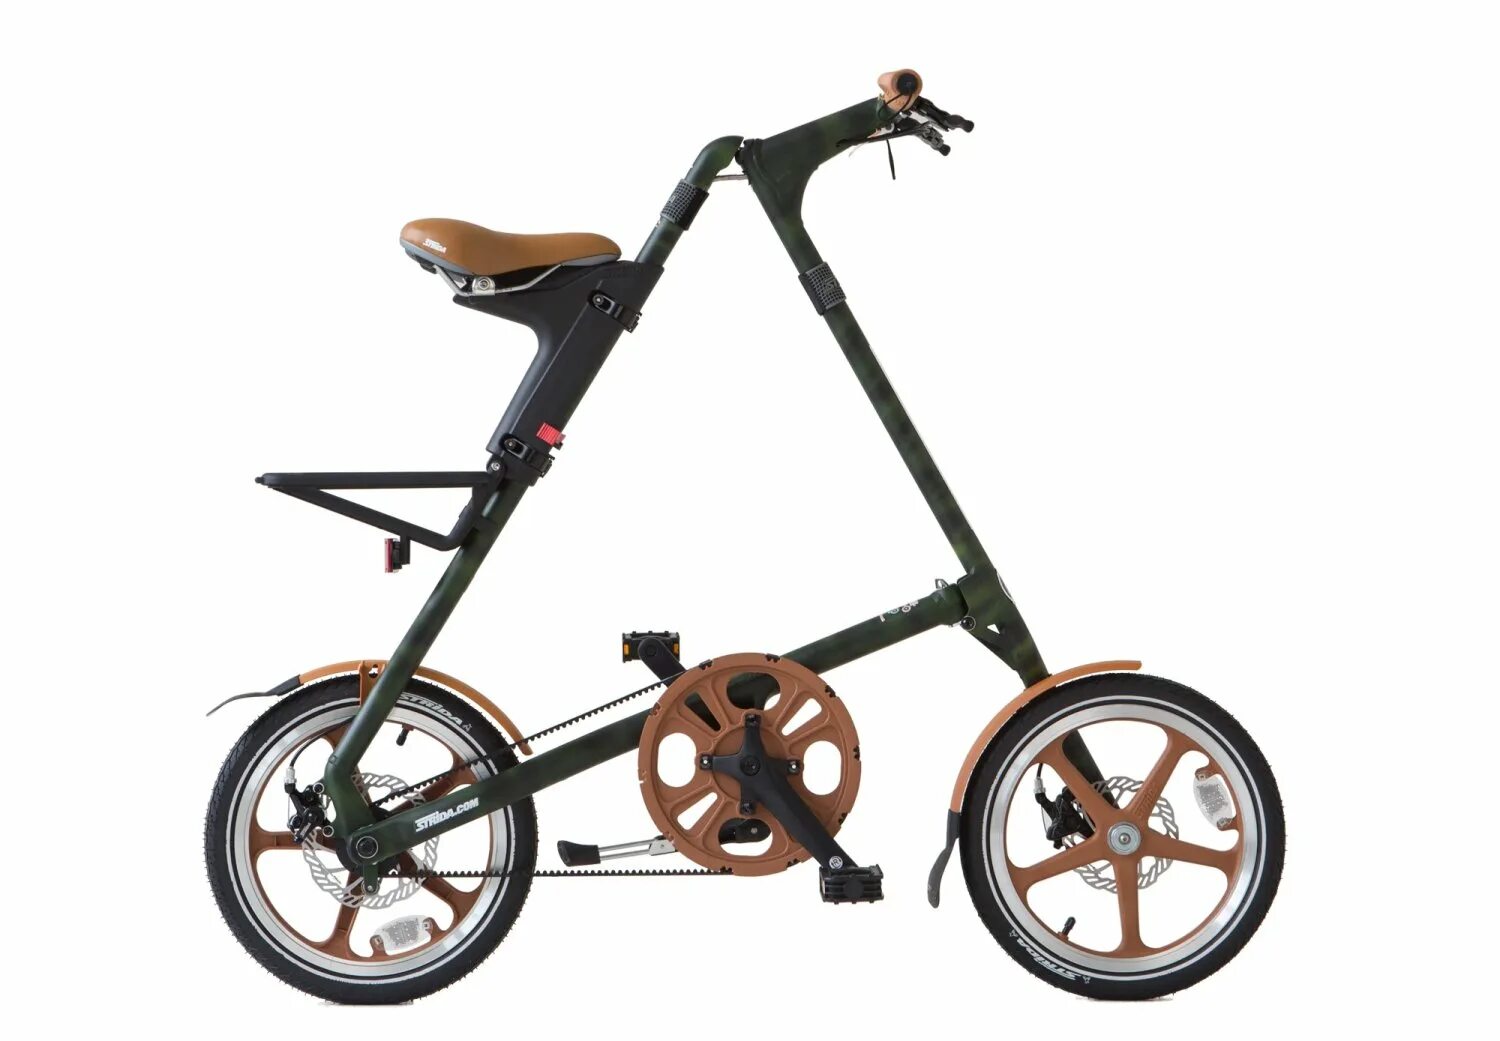 Купить велосипед с маленькими колесами. Велосипед Strida 5.2. Складной велосипед Strida lt. Складной велосипед Strida 5.2. Складной городской велосипед Strida lt (2019).